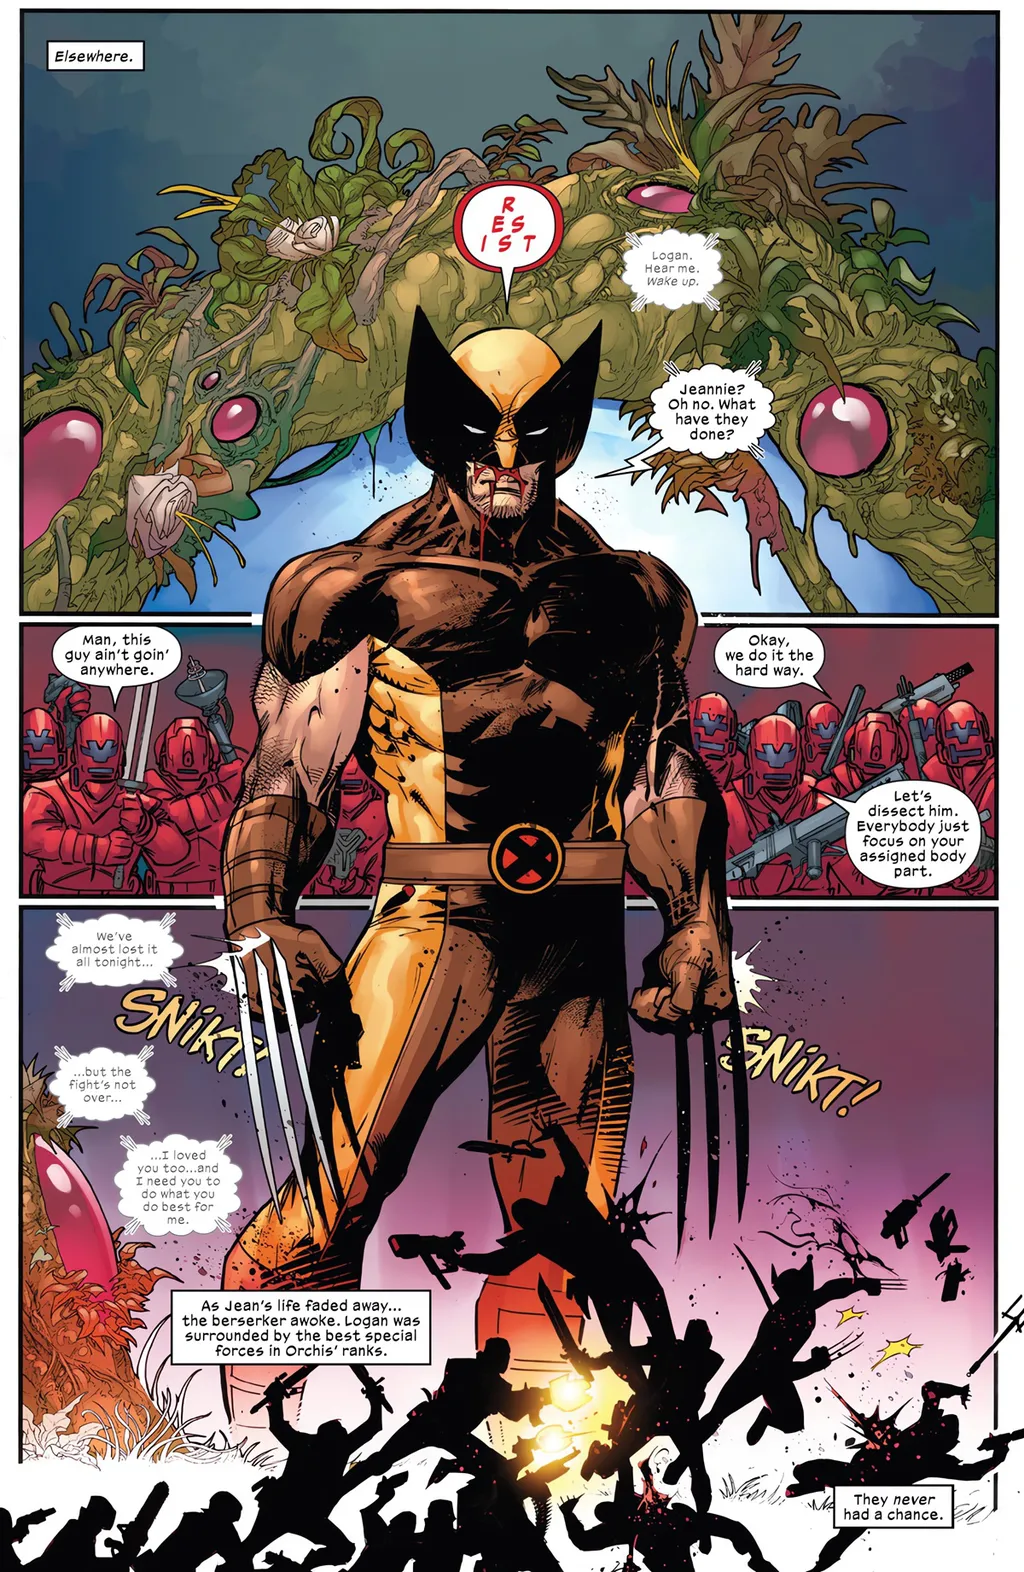 Jean Grey, antes de morrer, também diz que amou Wolverine (Imagem: Reprodução/Marvel Comics)